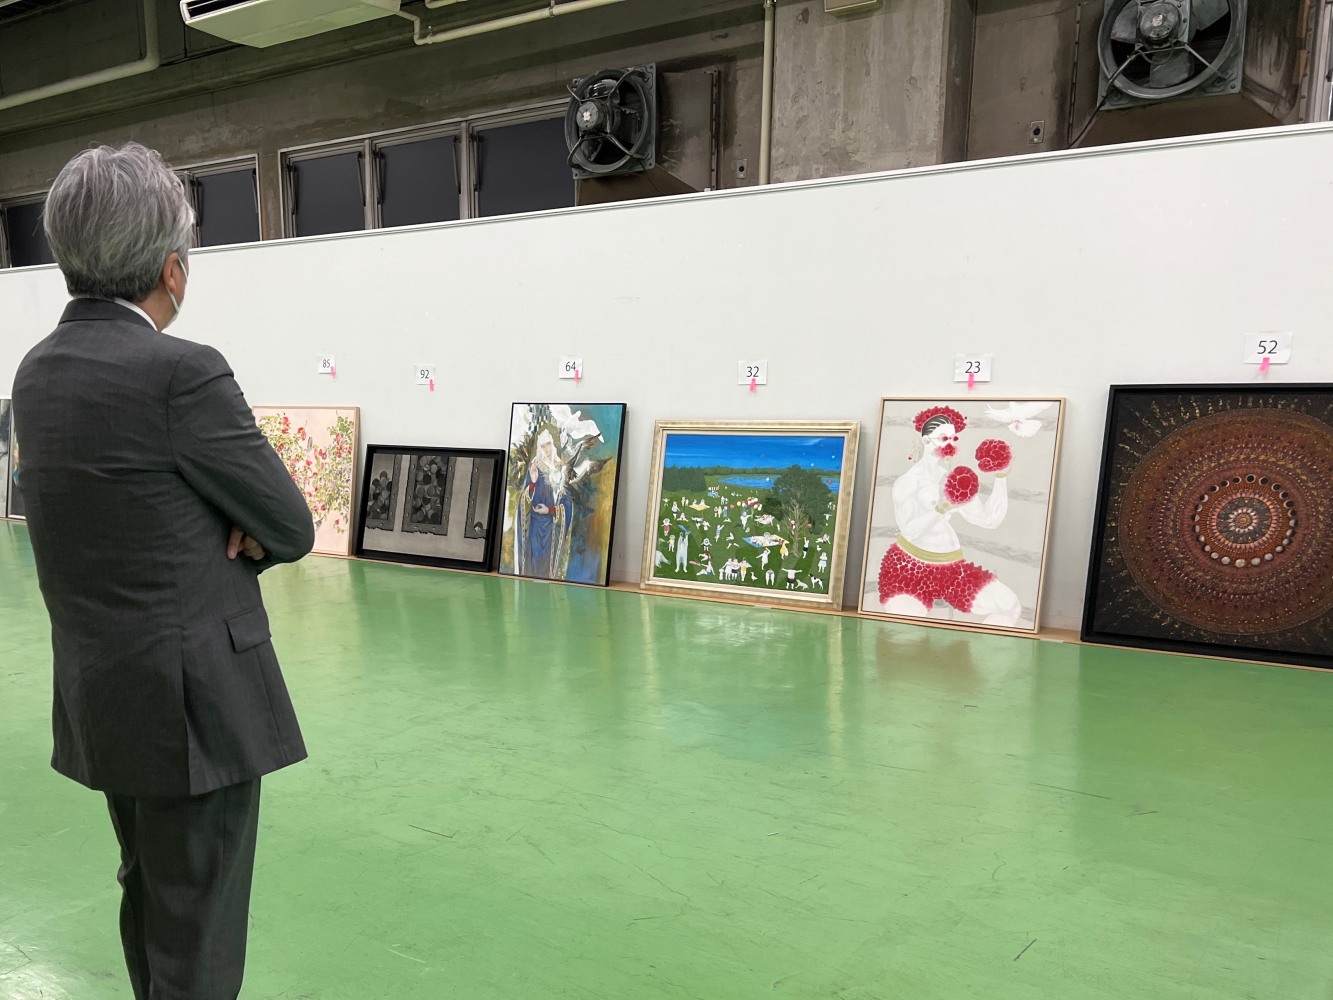 第二回千住博日本画大賞展の審査をしています。素晴らしい作品が集まりました。特に受賞作は傑出した作品でした。このような画家がいたのだな、と驚きました。20作しか入選できない激戦でした。